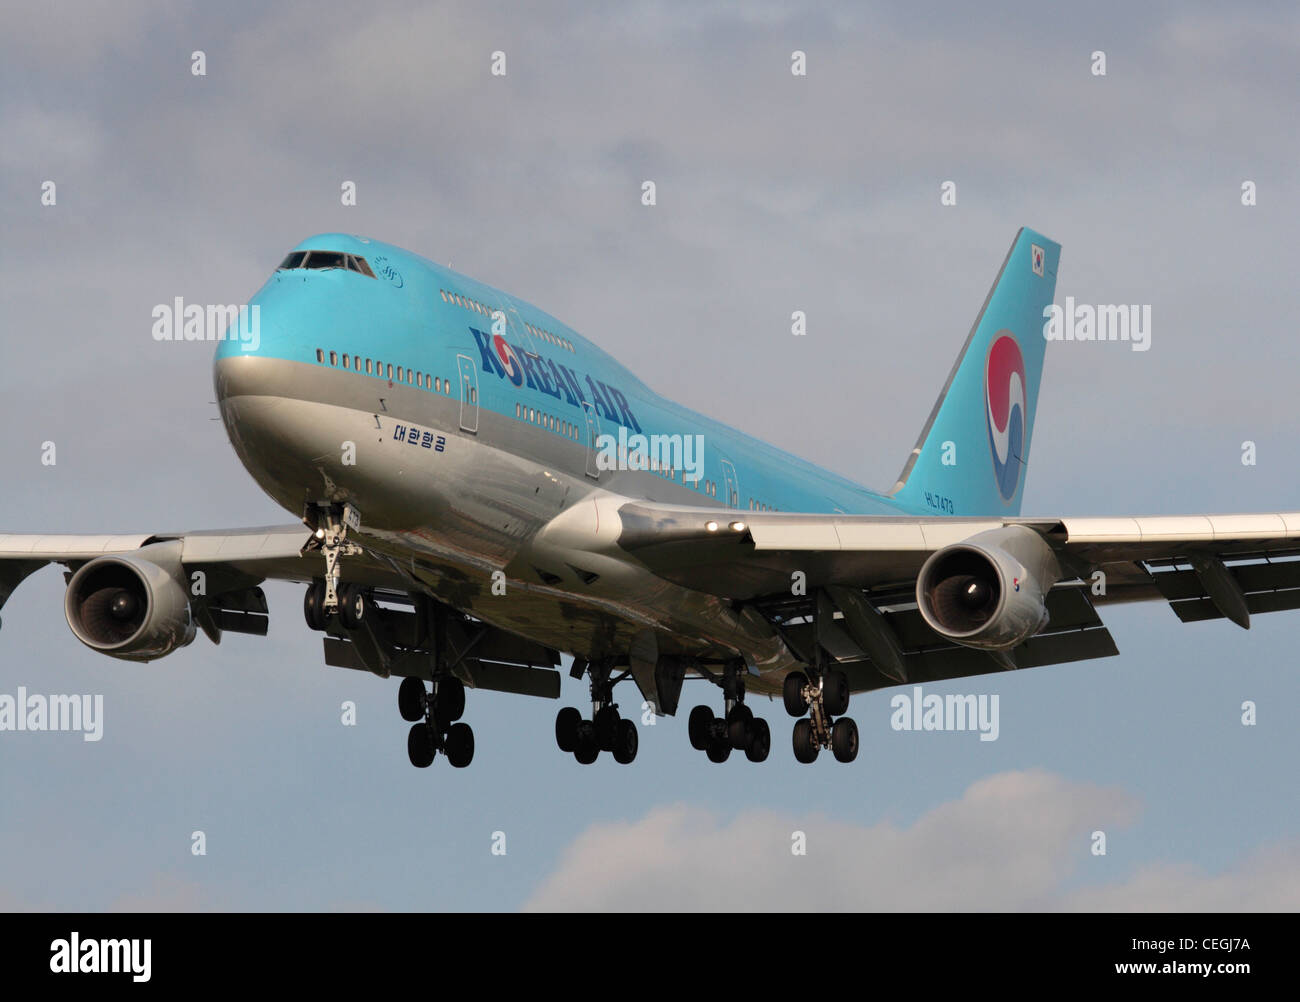 Le transport aérien commercial. Vue rapprochée d'un Boeing 747-400 de Korean Air en approche finale Banque D'Images